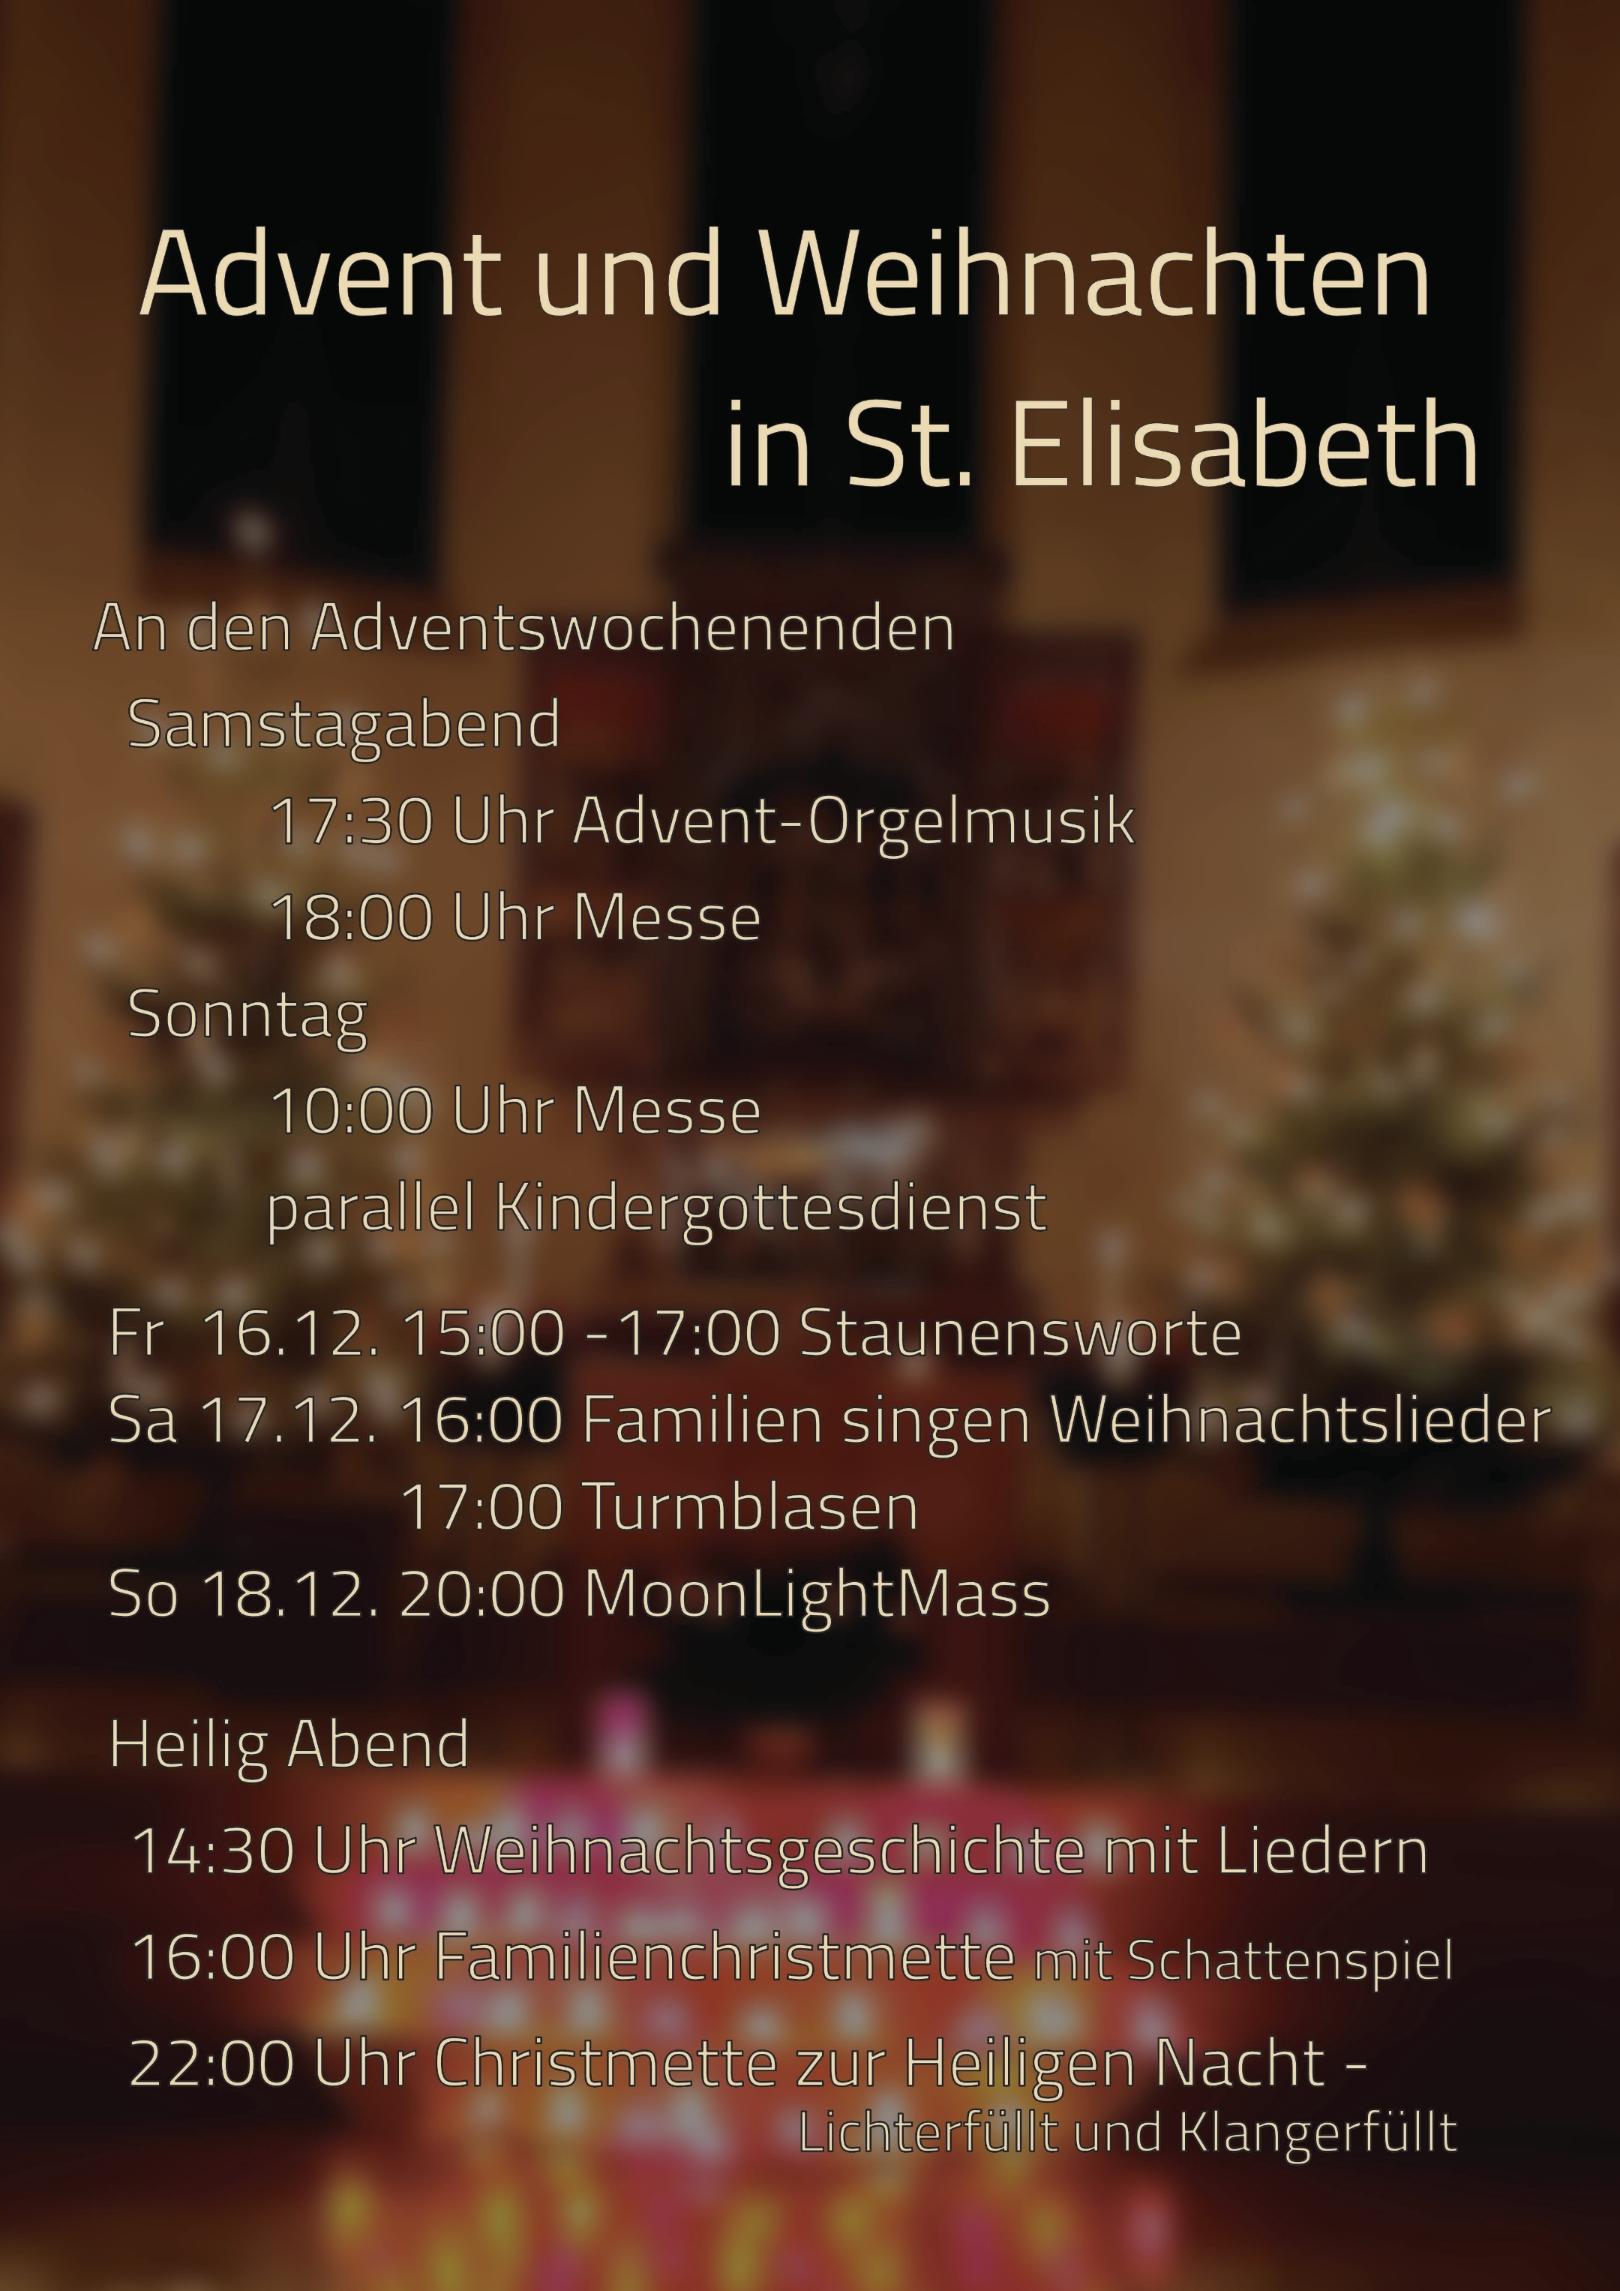 Advent und Weihnachten in St. Elisabeth 2022 (c) Dominique Humm/Angela Gessner